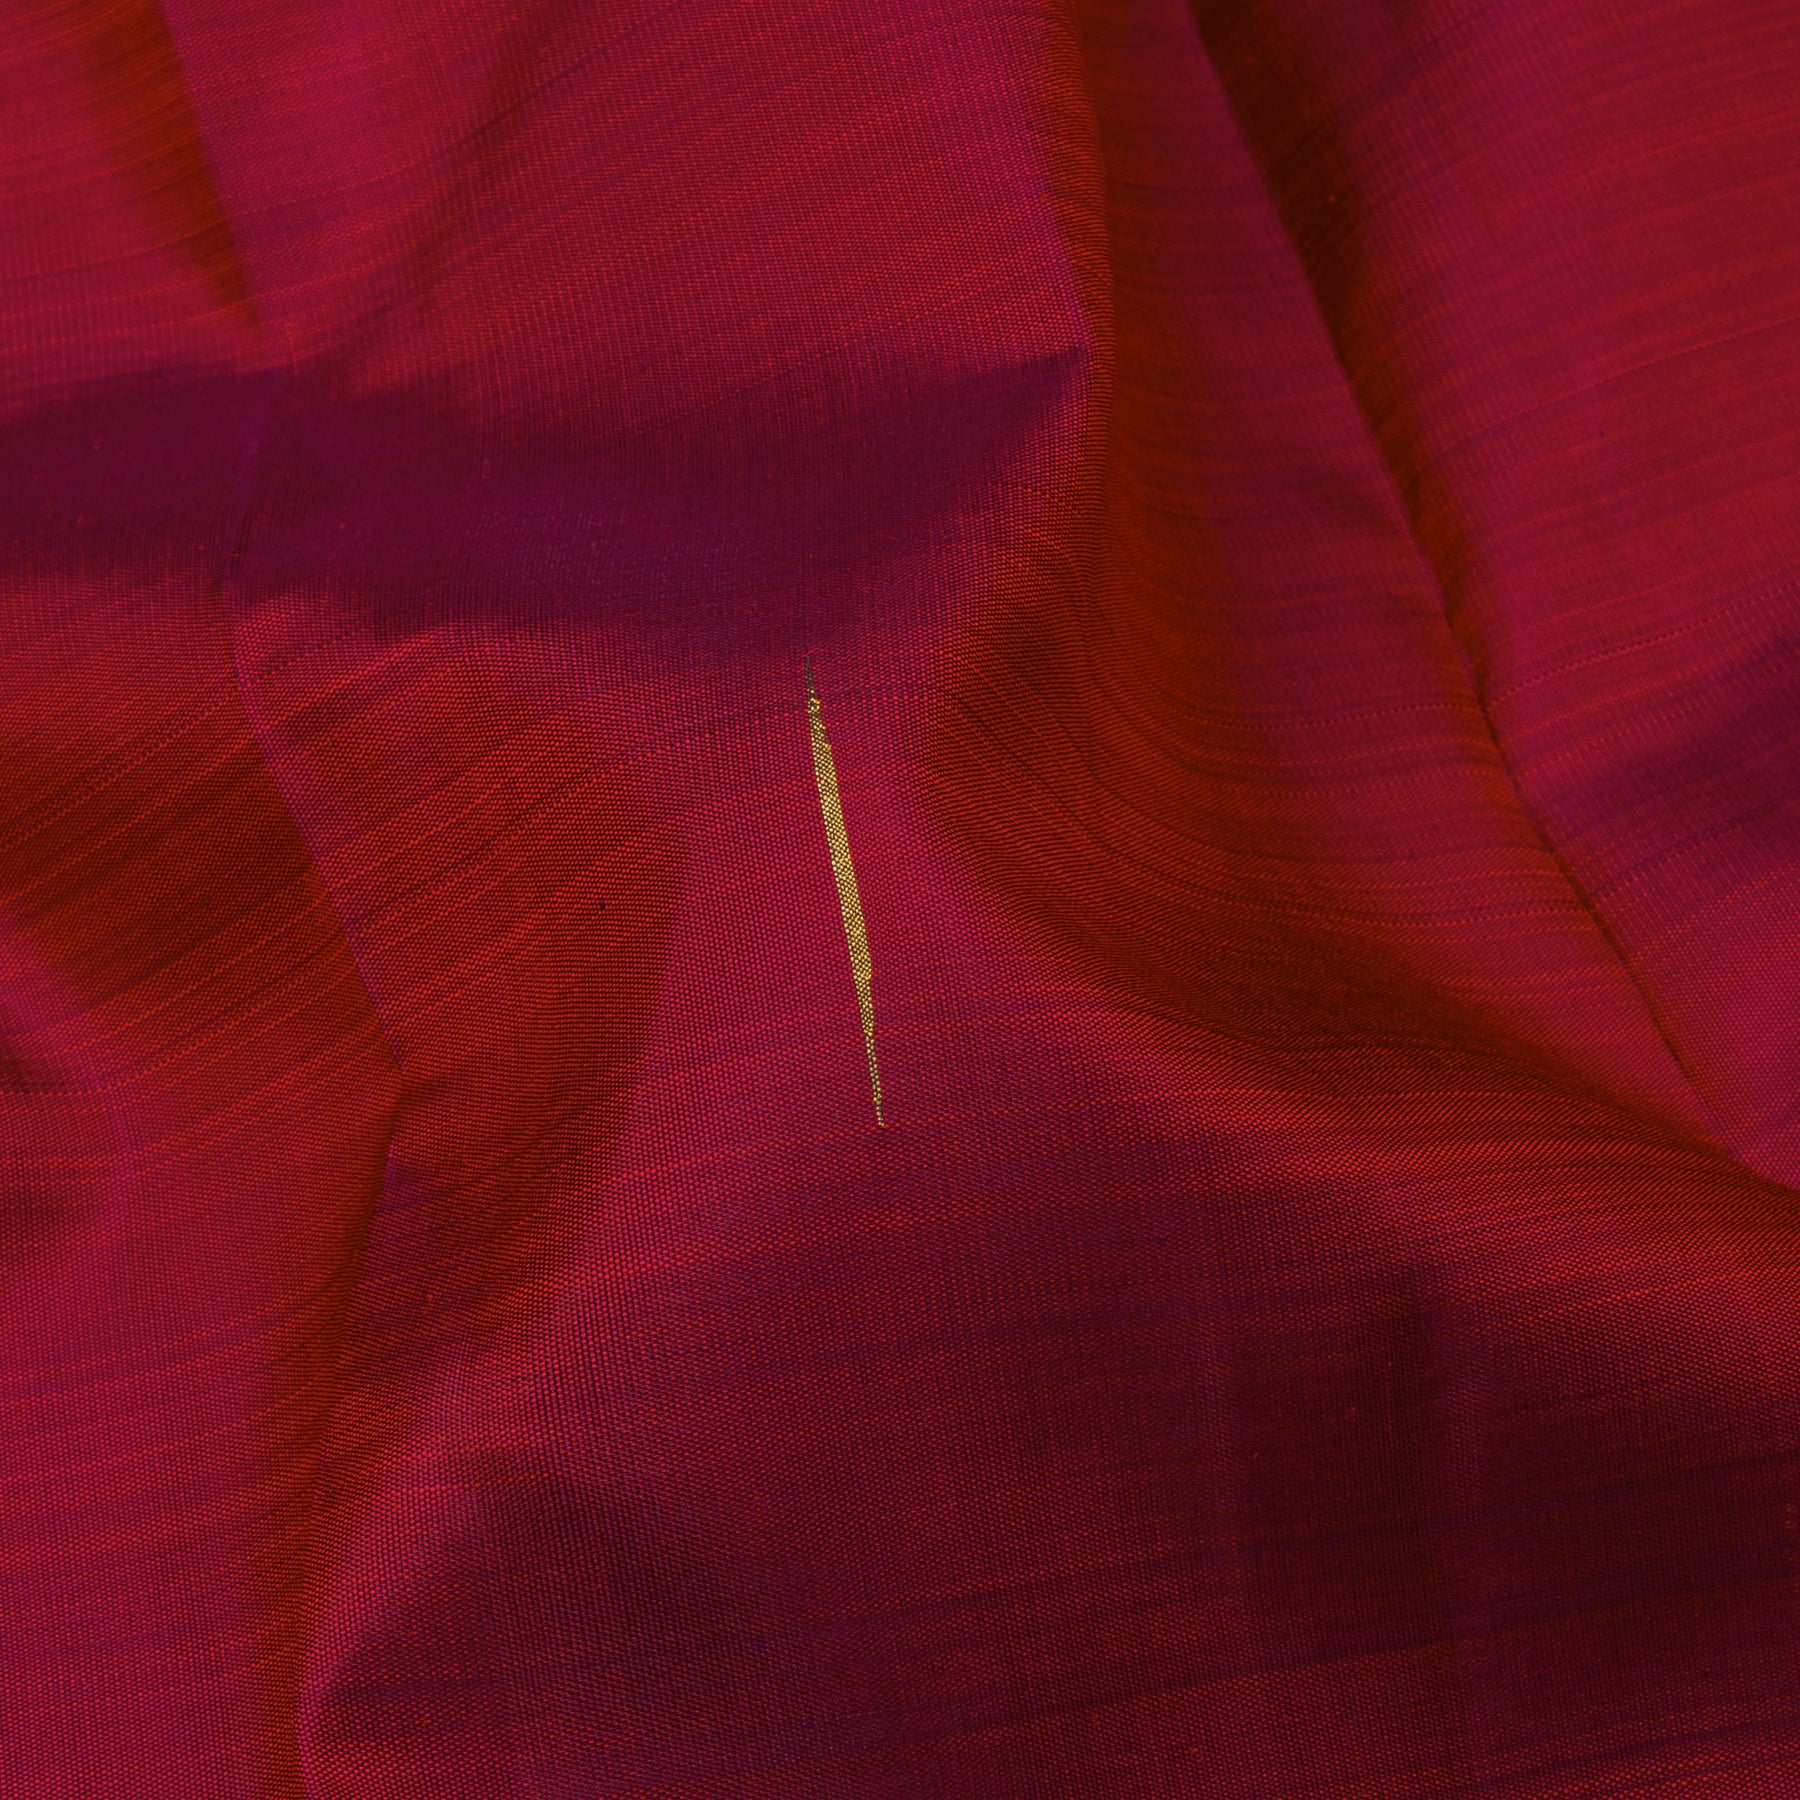 Kanakavalli Kanjivaram Silk Sari 24-595-HS001-00065 - Fabric View